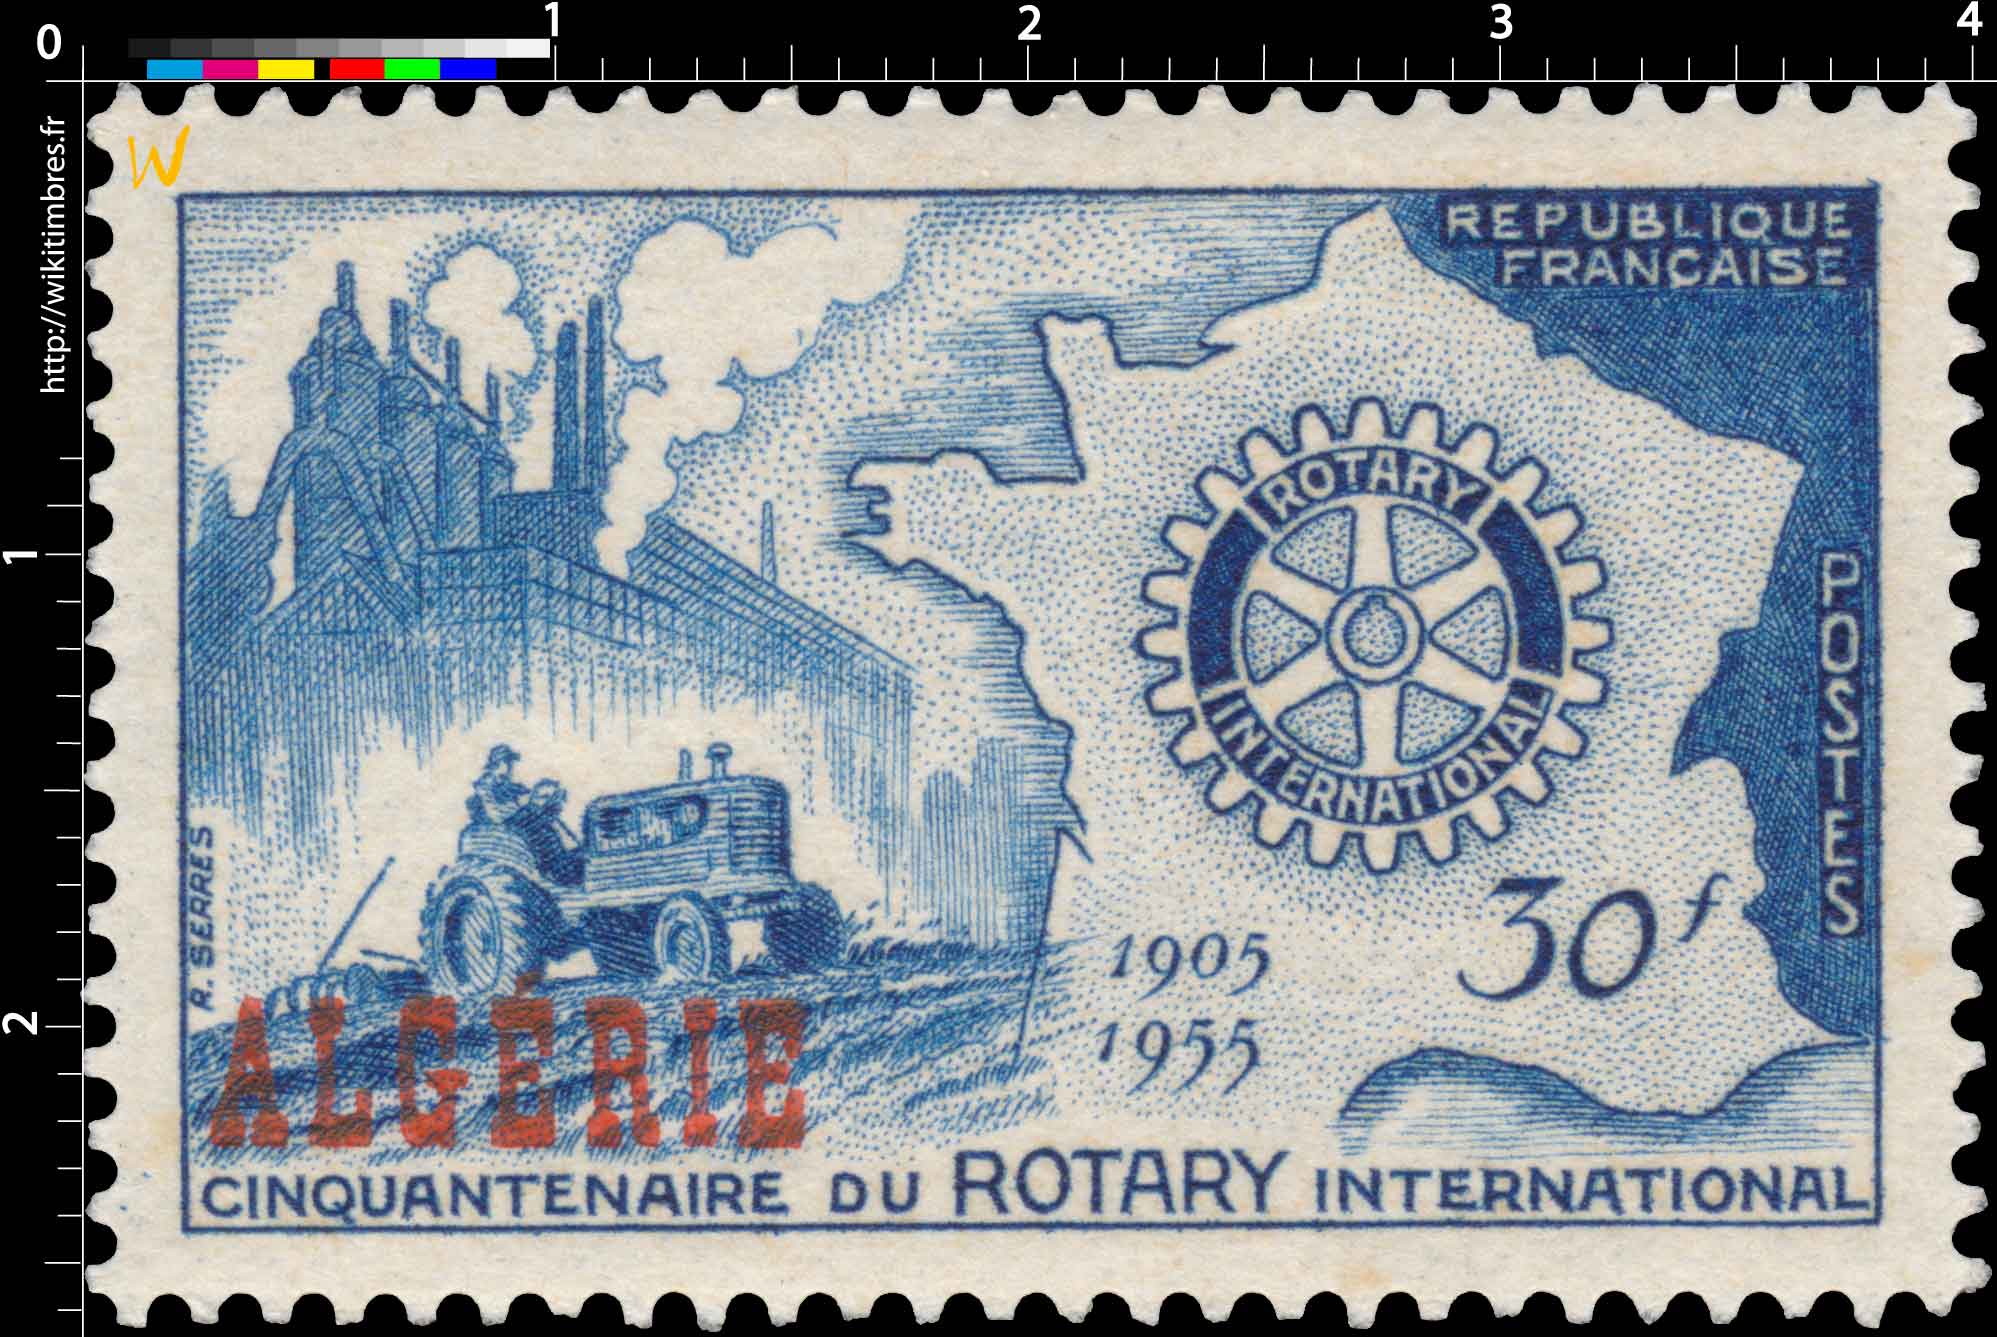 Algérie - Cinquantenaire du Rotary international 1905 1955